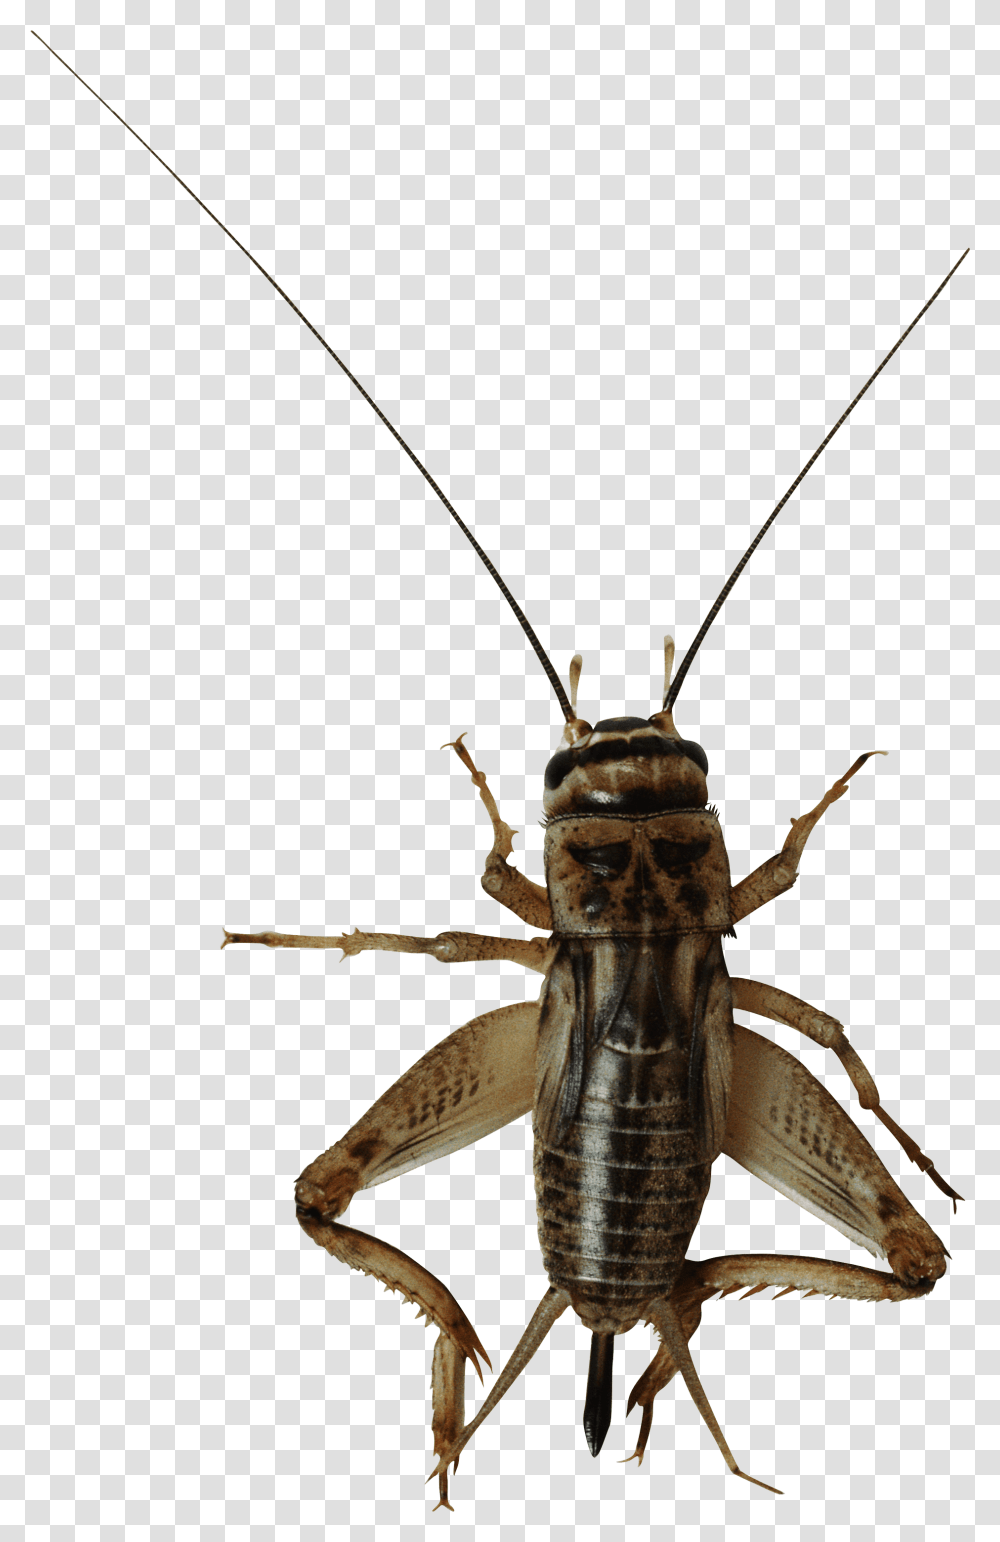 Download Image Cricket Bug Background, Insect, Invertebrate, Animal, Spider Transparent Png